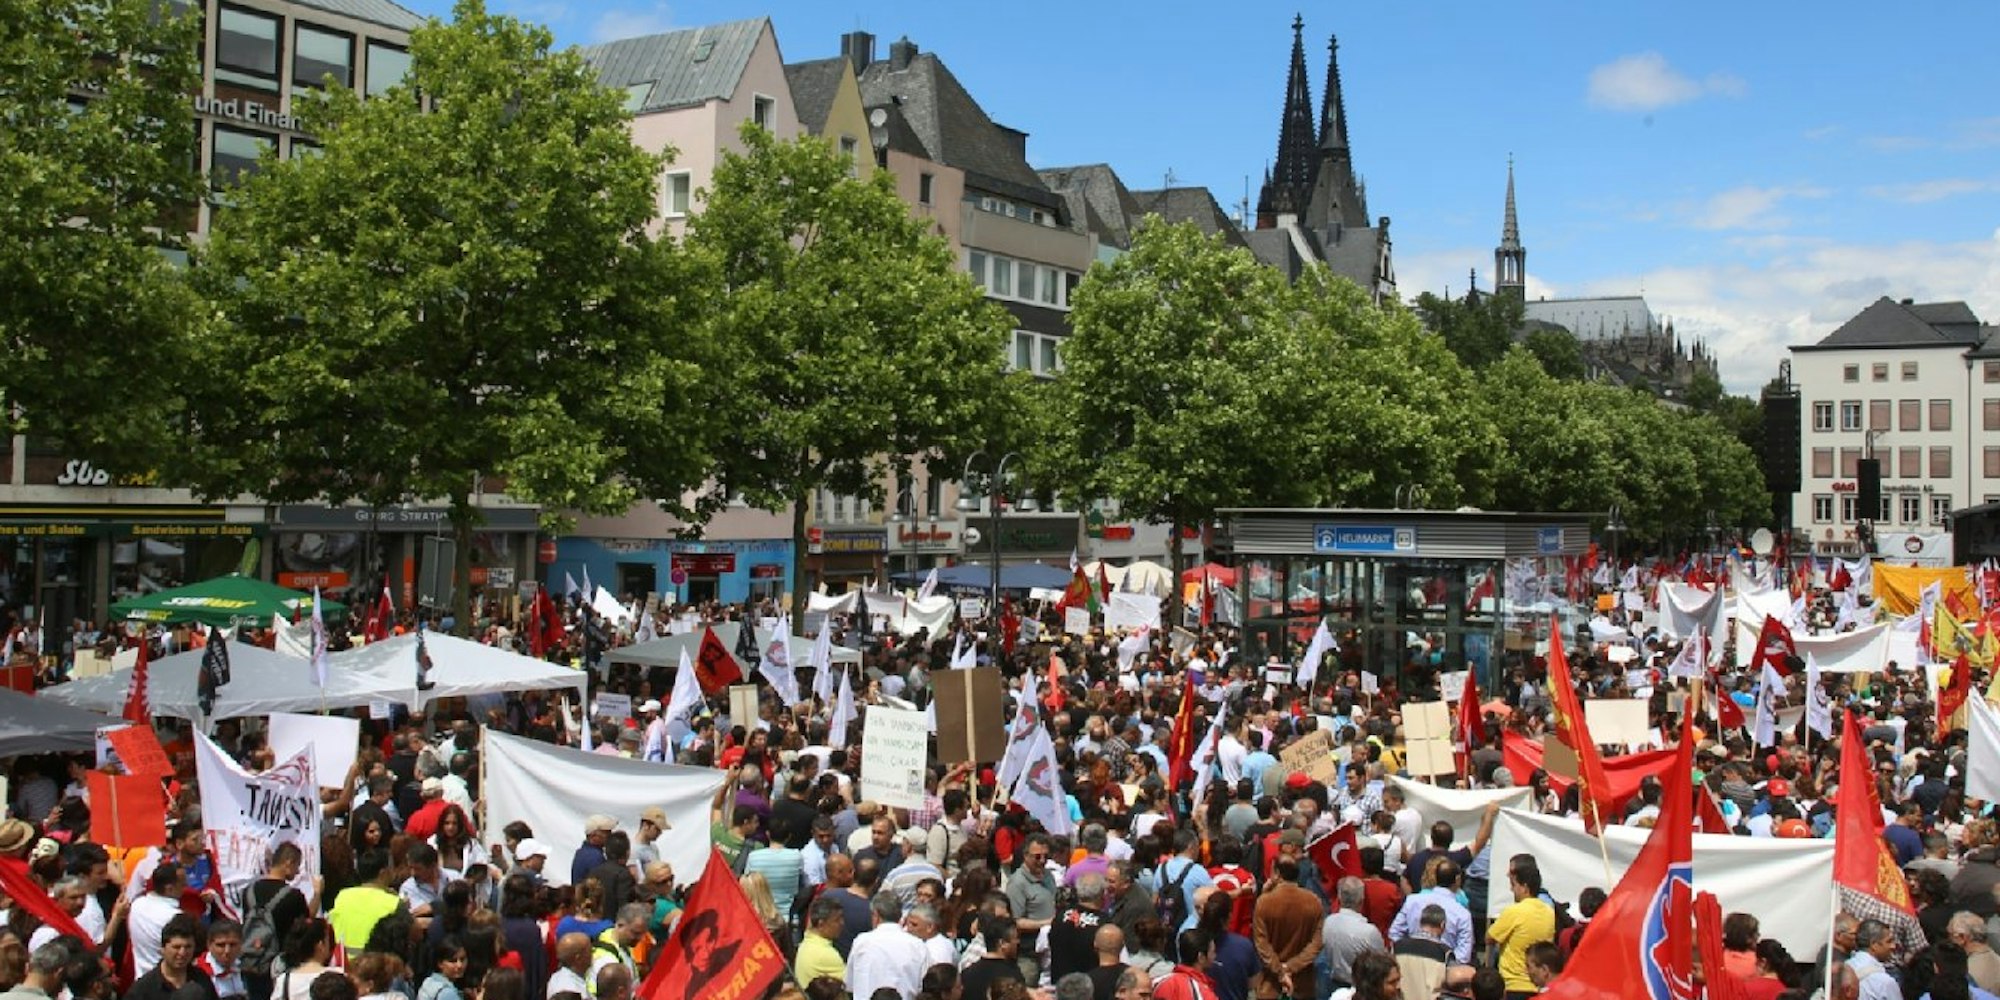 Nach Angaben des Veranstalter sollen insgesamt 100.000 Menschen in Köln gegen Erdogan protestiert haben.